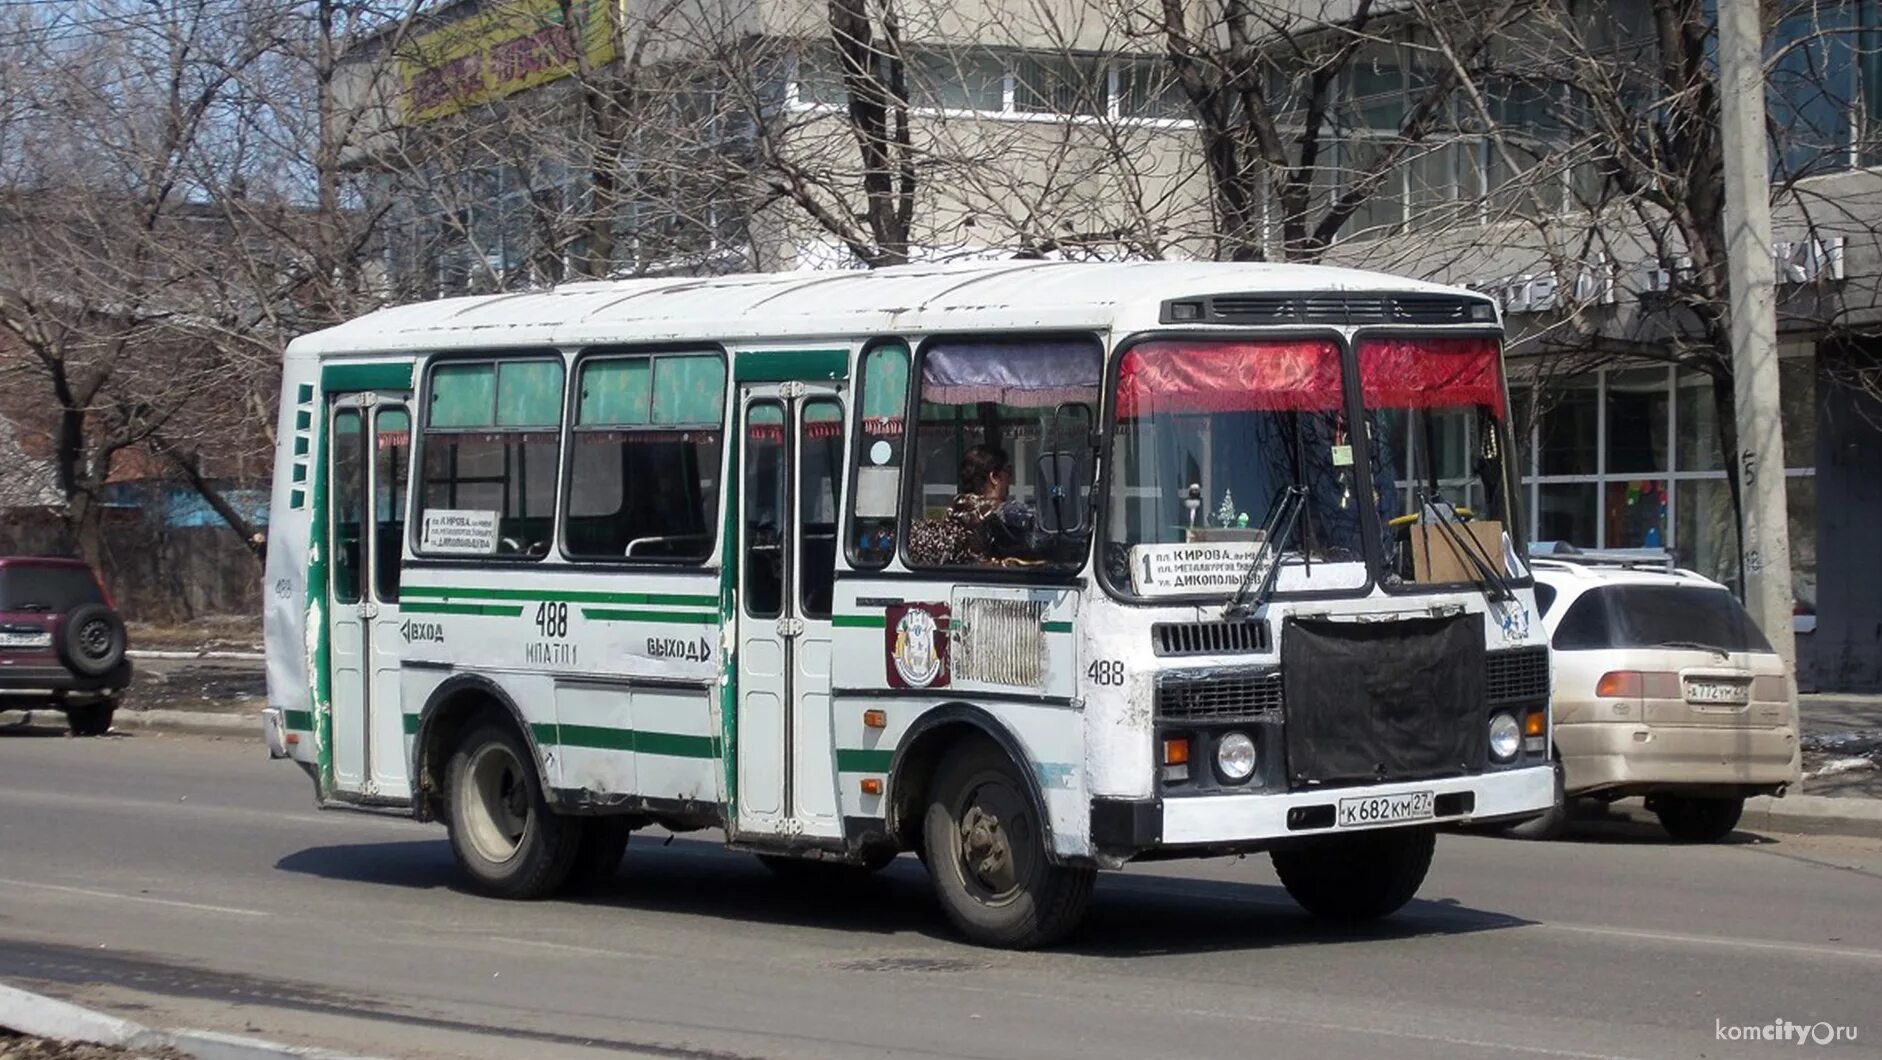 Номера автобусов комсомольск на амуре. Автобусы ПАЗ В Комсомольске-на-Амуре. 20 Автобус Комсомольск-на-Амуре. Автобус ПАЗ 32051. Автобуса ПАЗ Хабаровск.